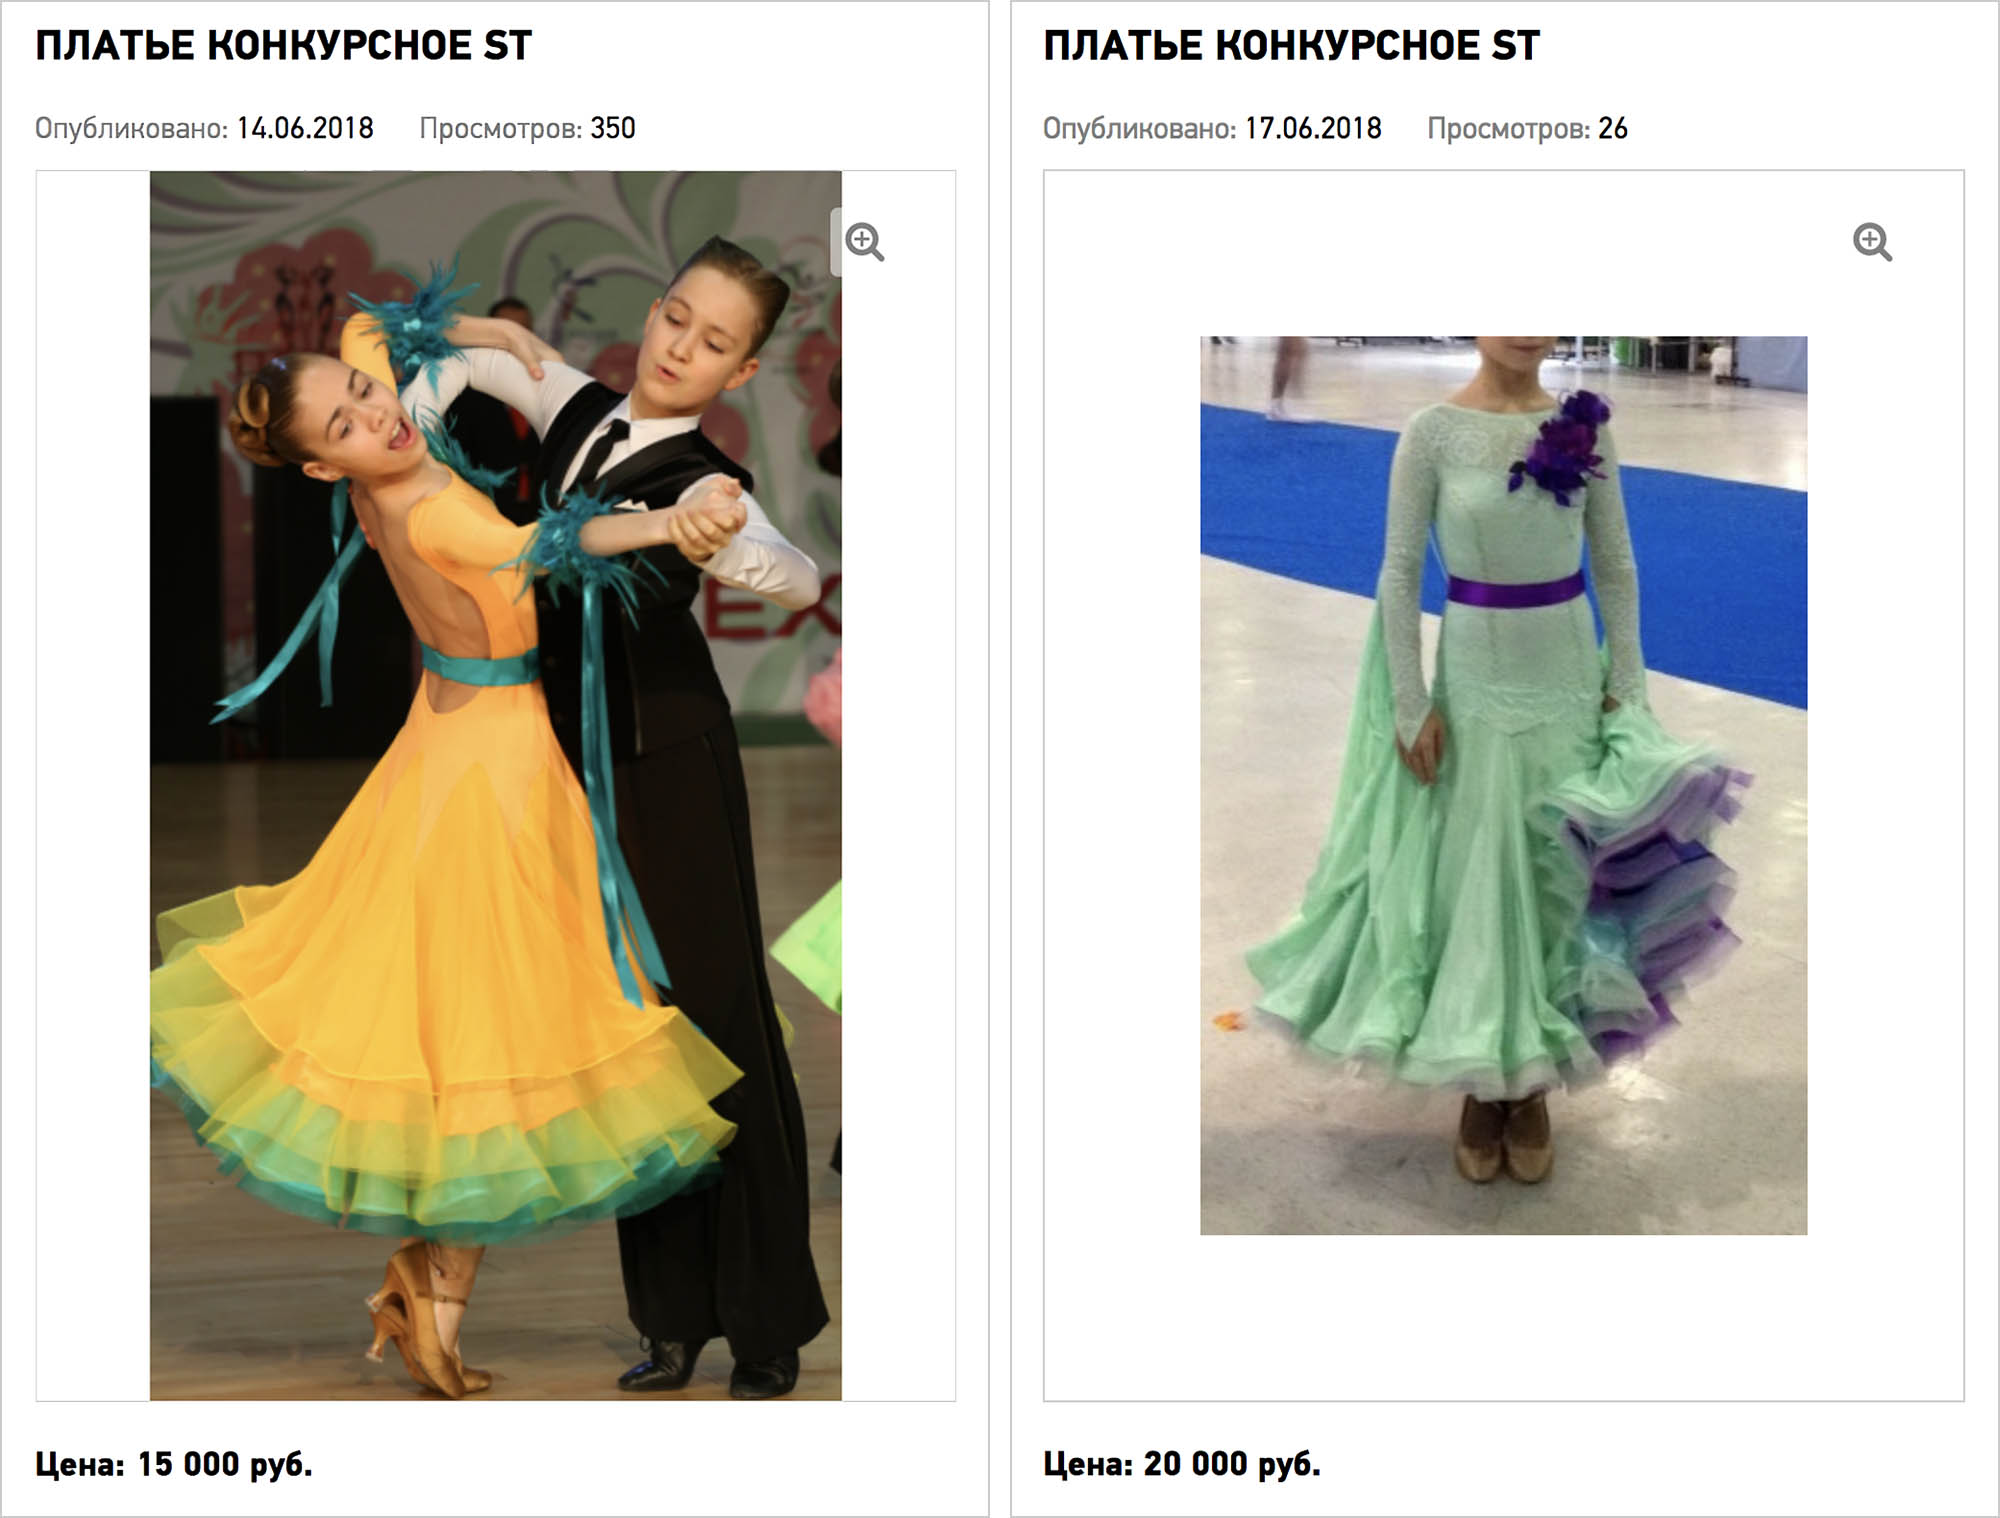 Бывают подержанные платья и за 15—20 тысяч рублей. Источник: dancesport.ru